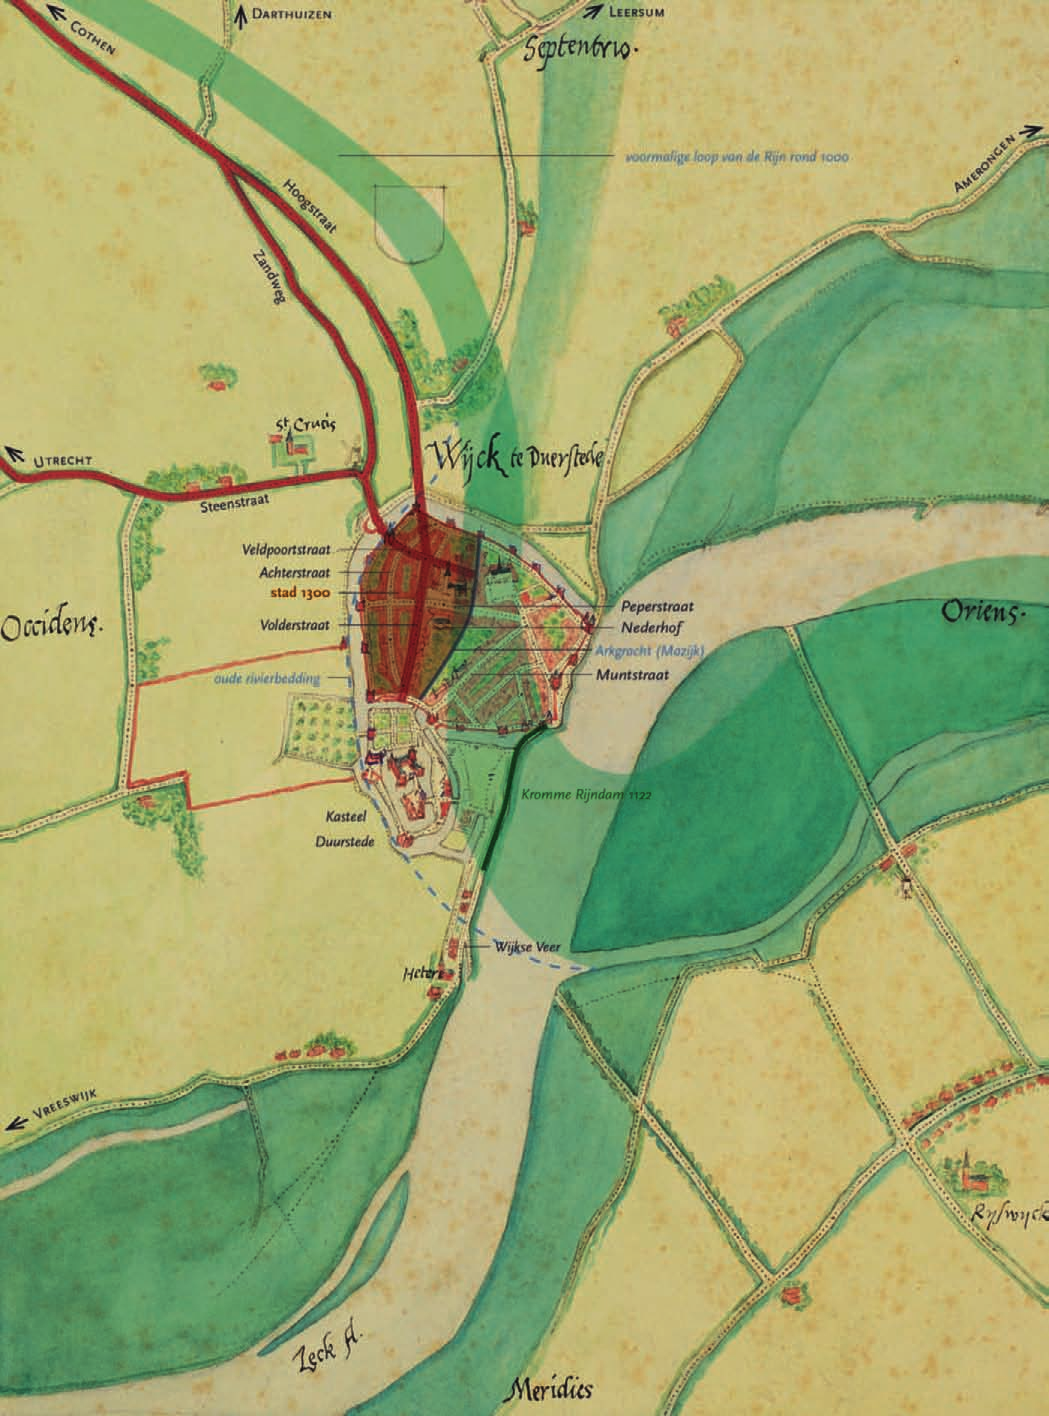 PROVINCIE UTRECHT 35 Wijk bij Duurstede. Stadsplattegrond van Jacob van Deventer uit omstreeks 1570, met de eerste stadsuitleg rond 1300 in groen.